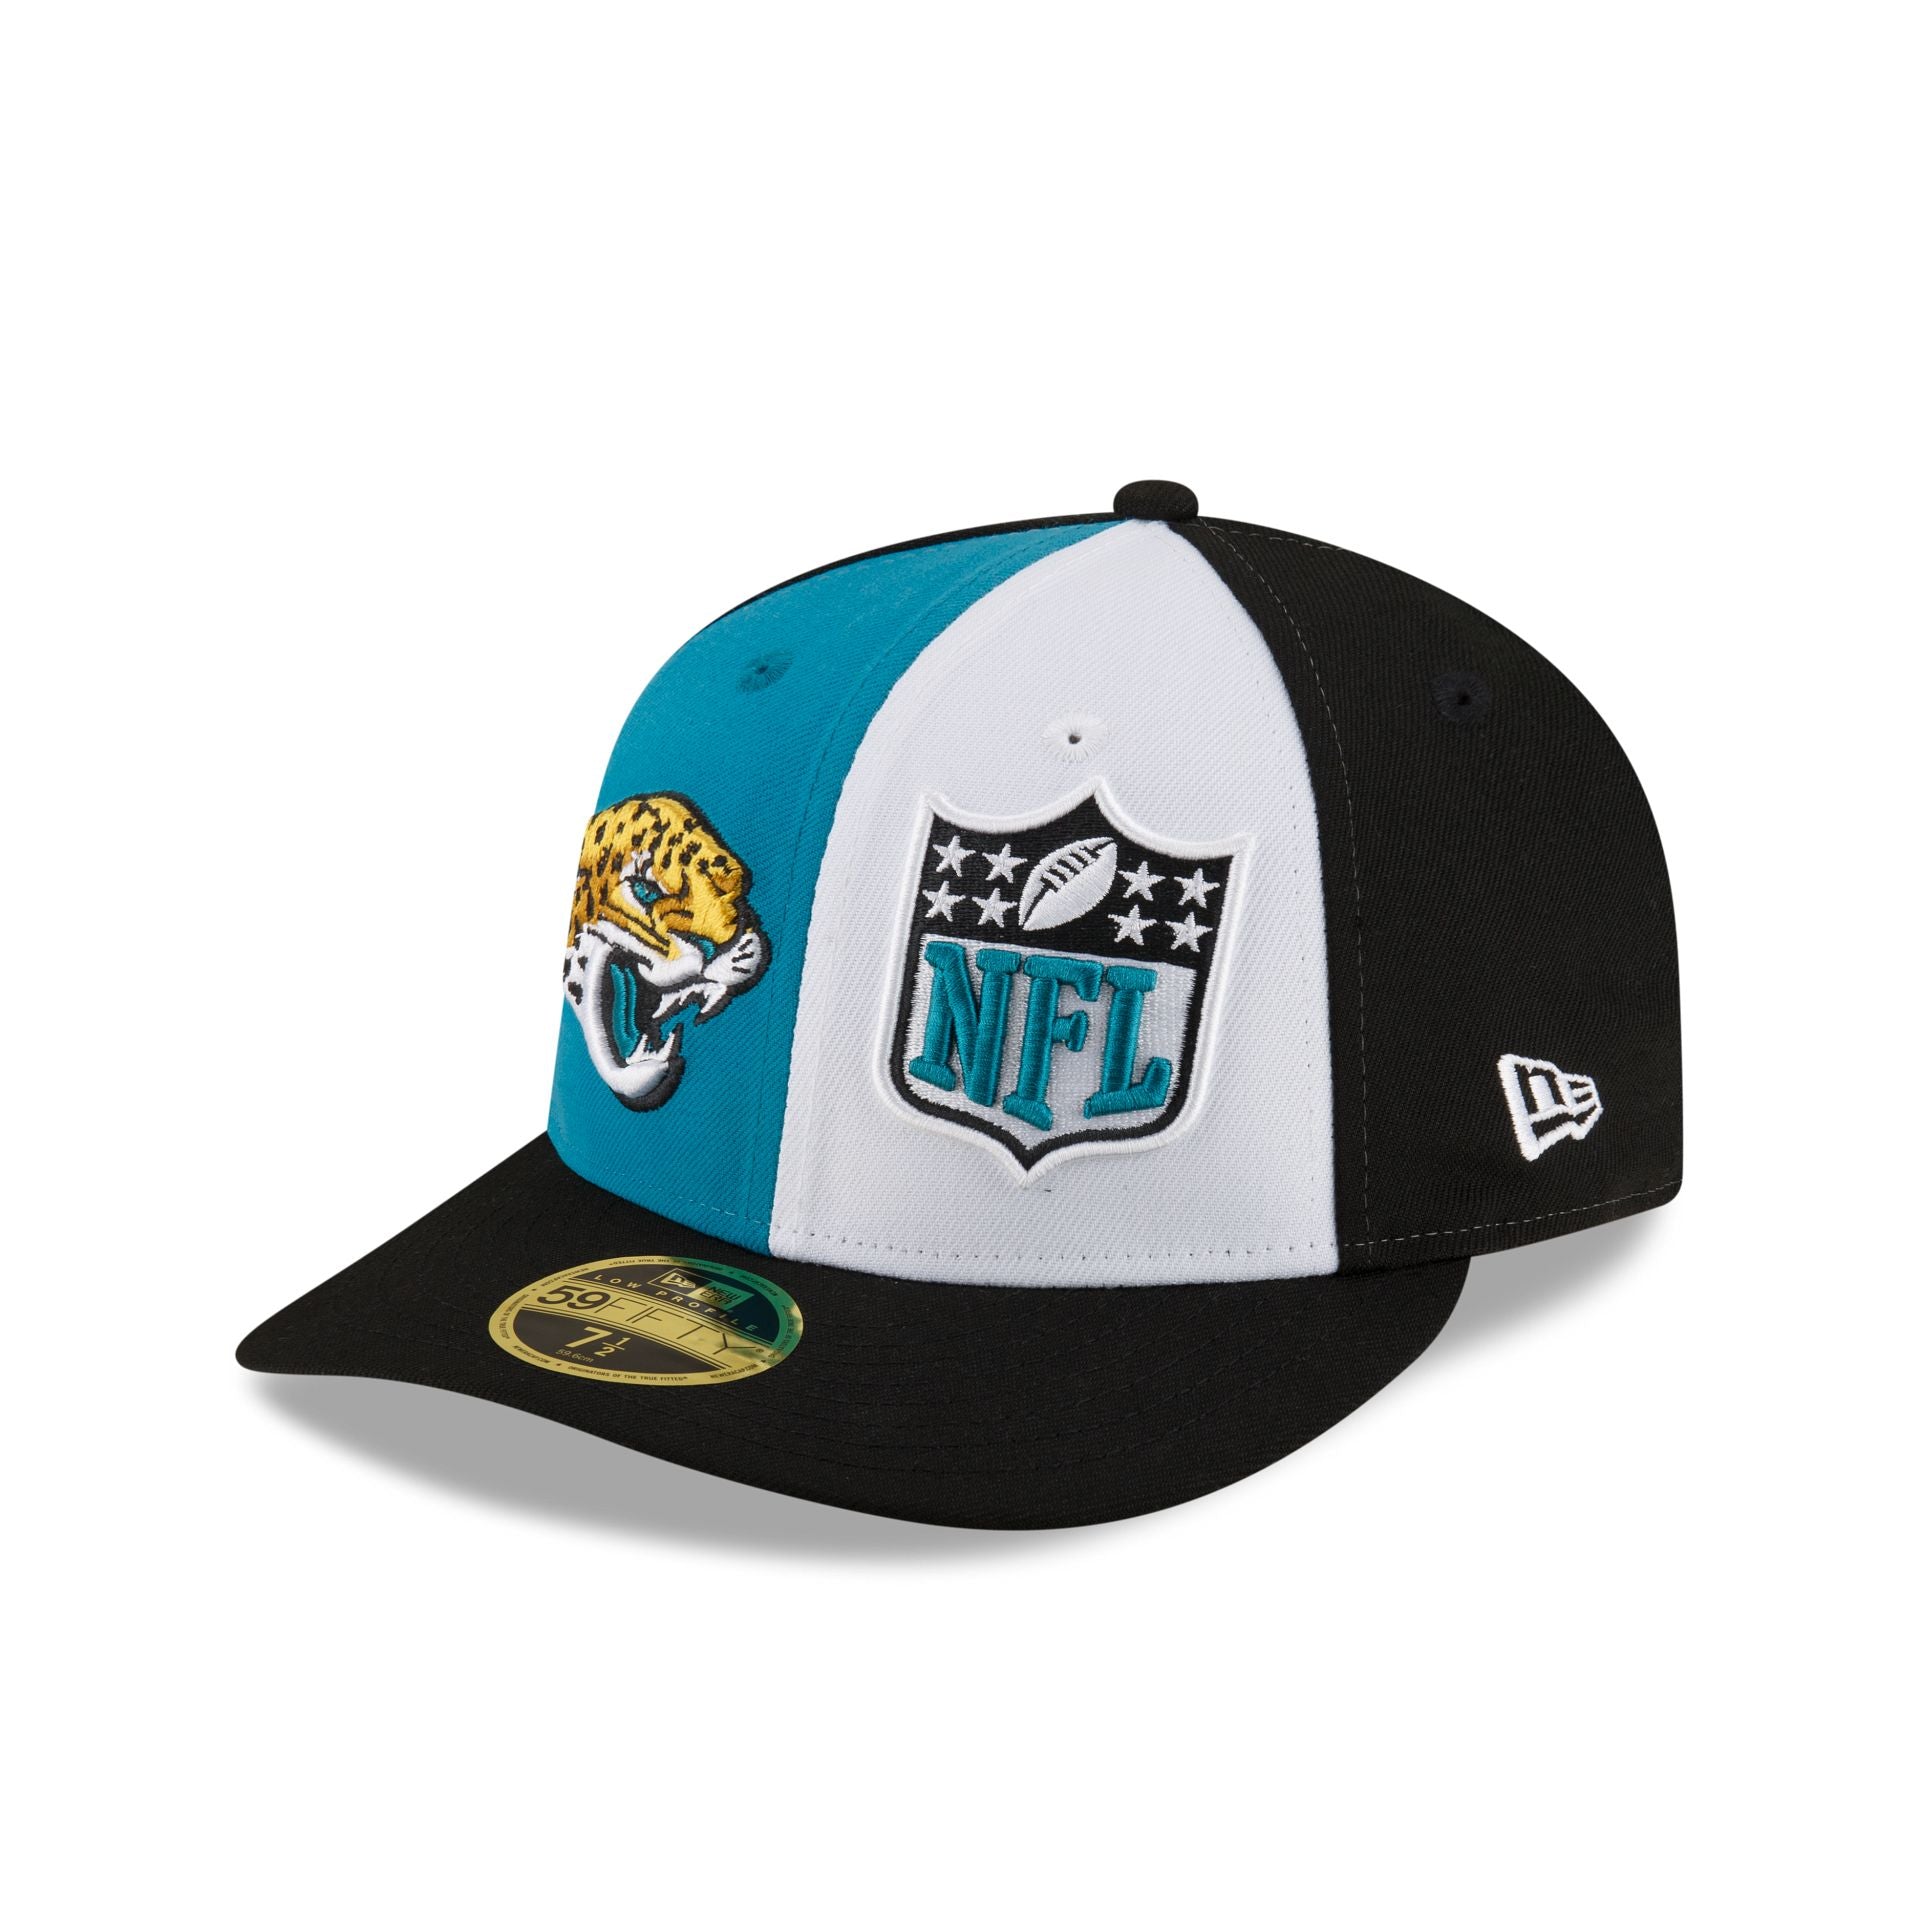 Jacksonville Jaguars Hats & Caps – New Era Cap